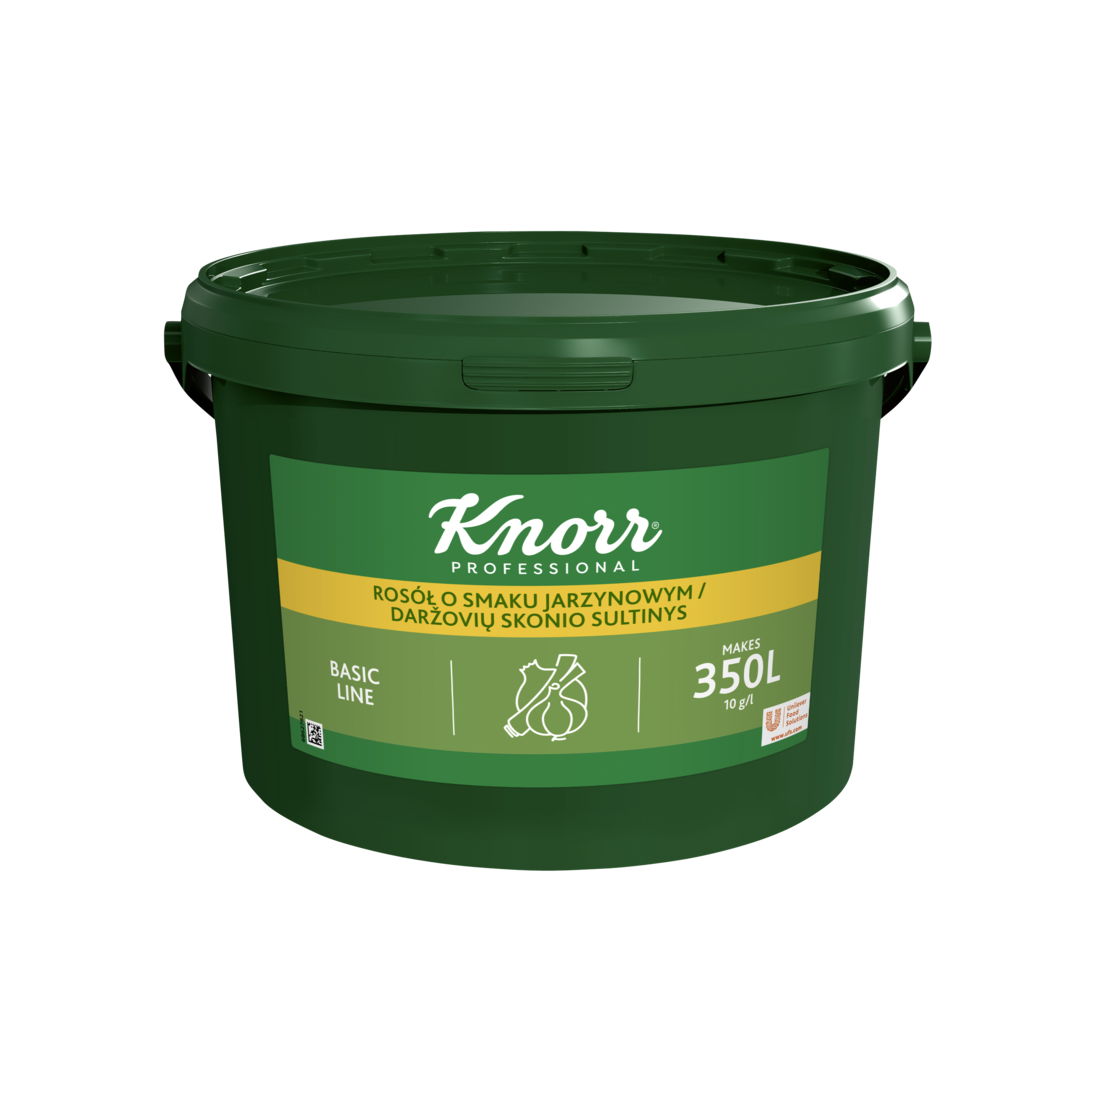 Knorr 1-2-3 Daržovių Sultinio Pagrindas 3,5 kg - 